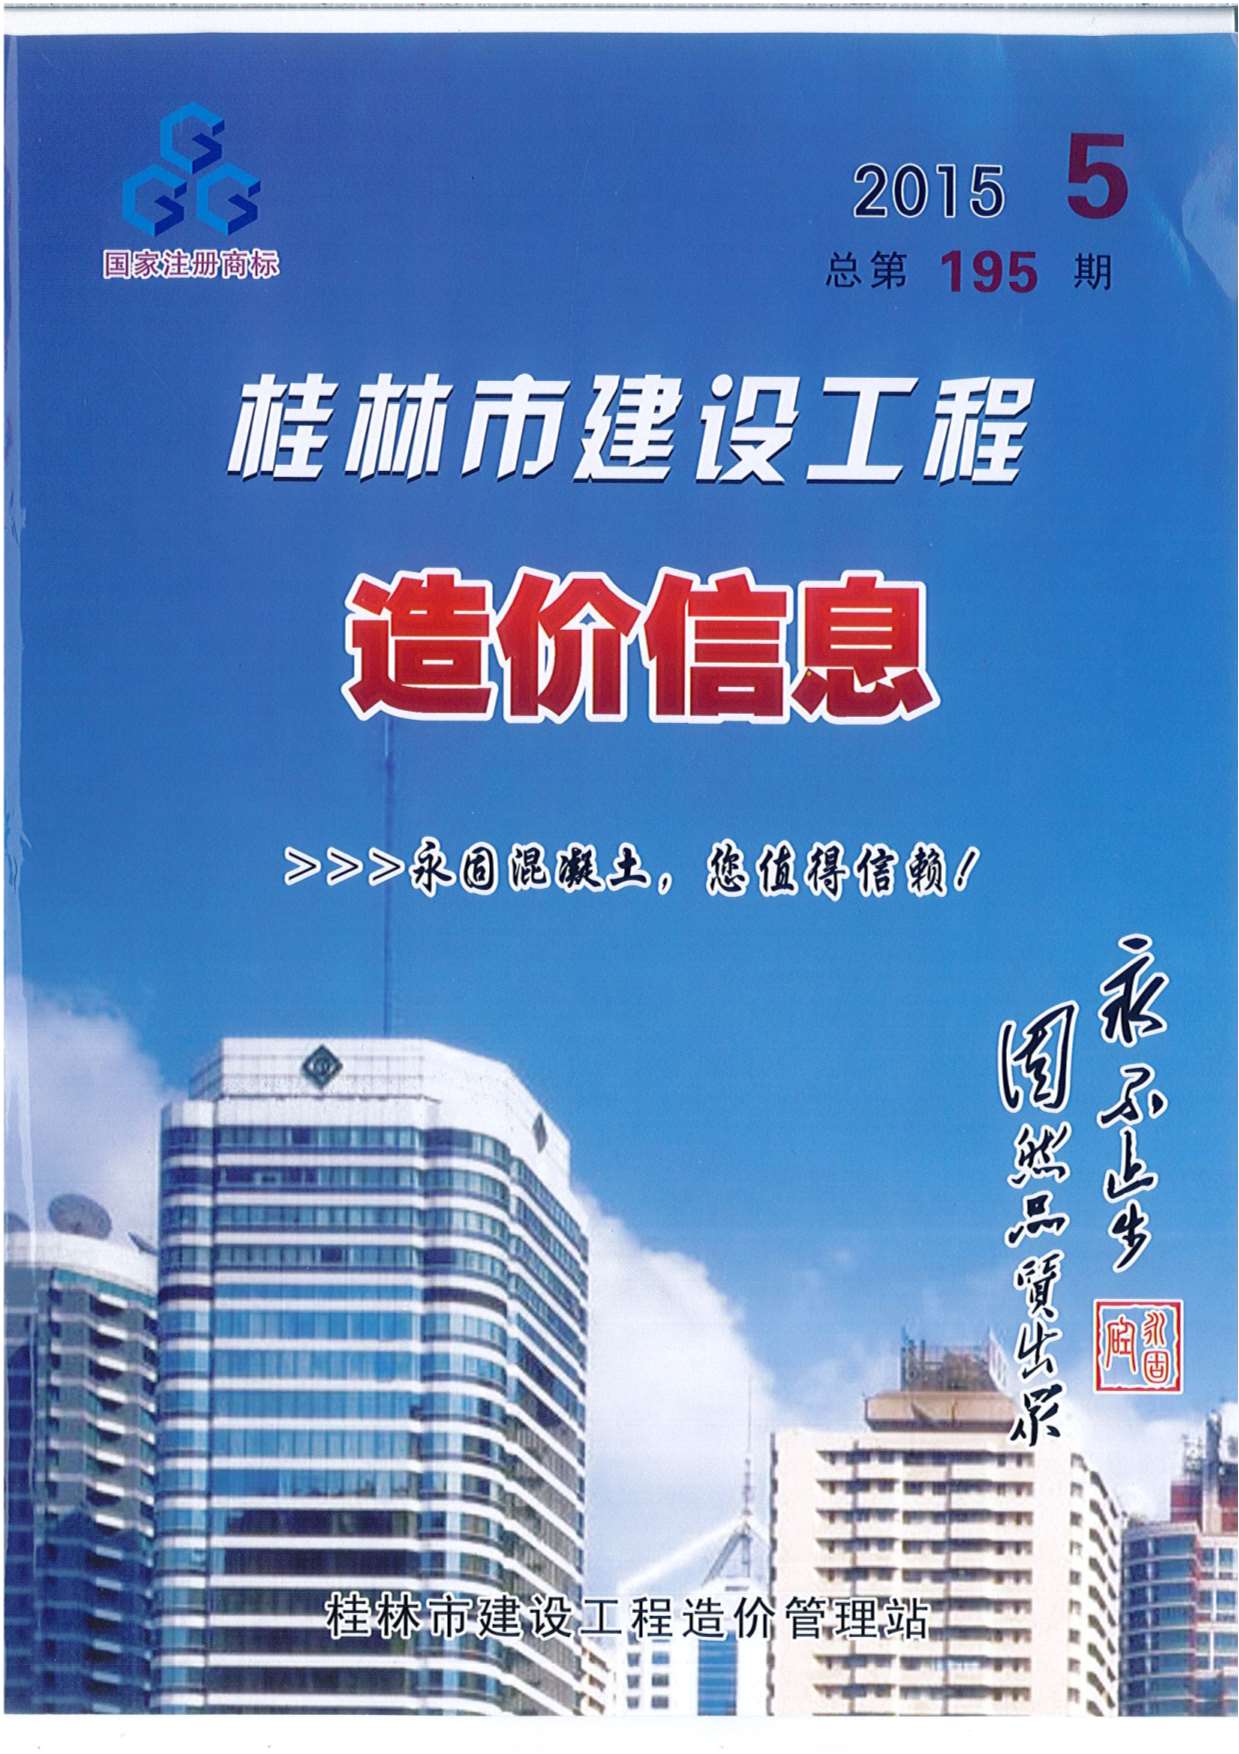 桂林市2015年5月信息价造价库信息价